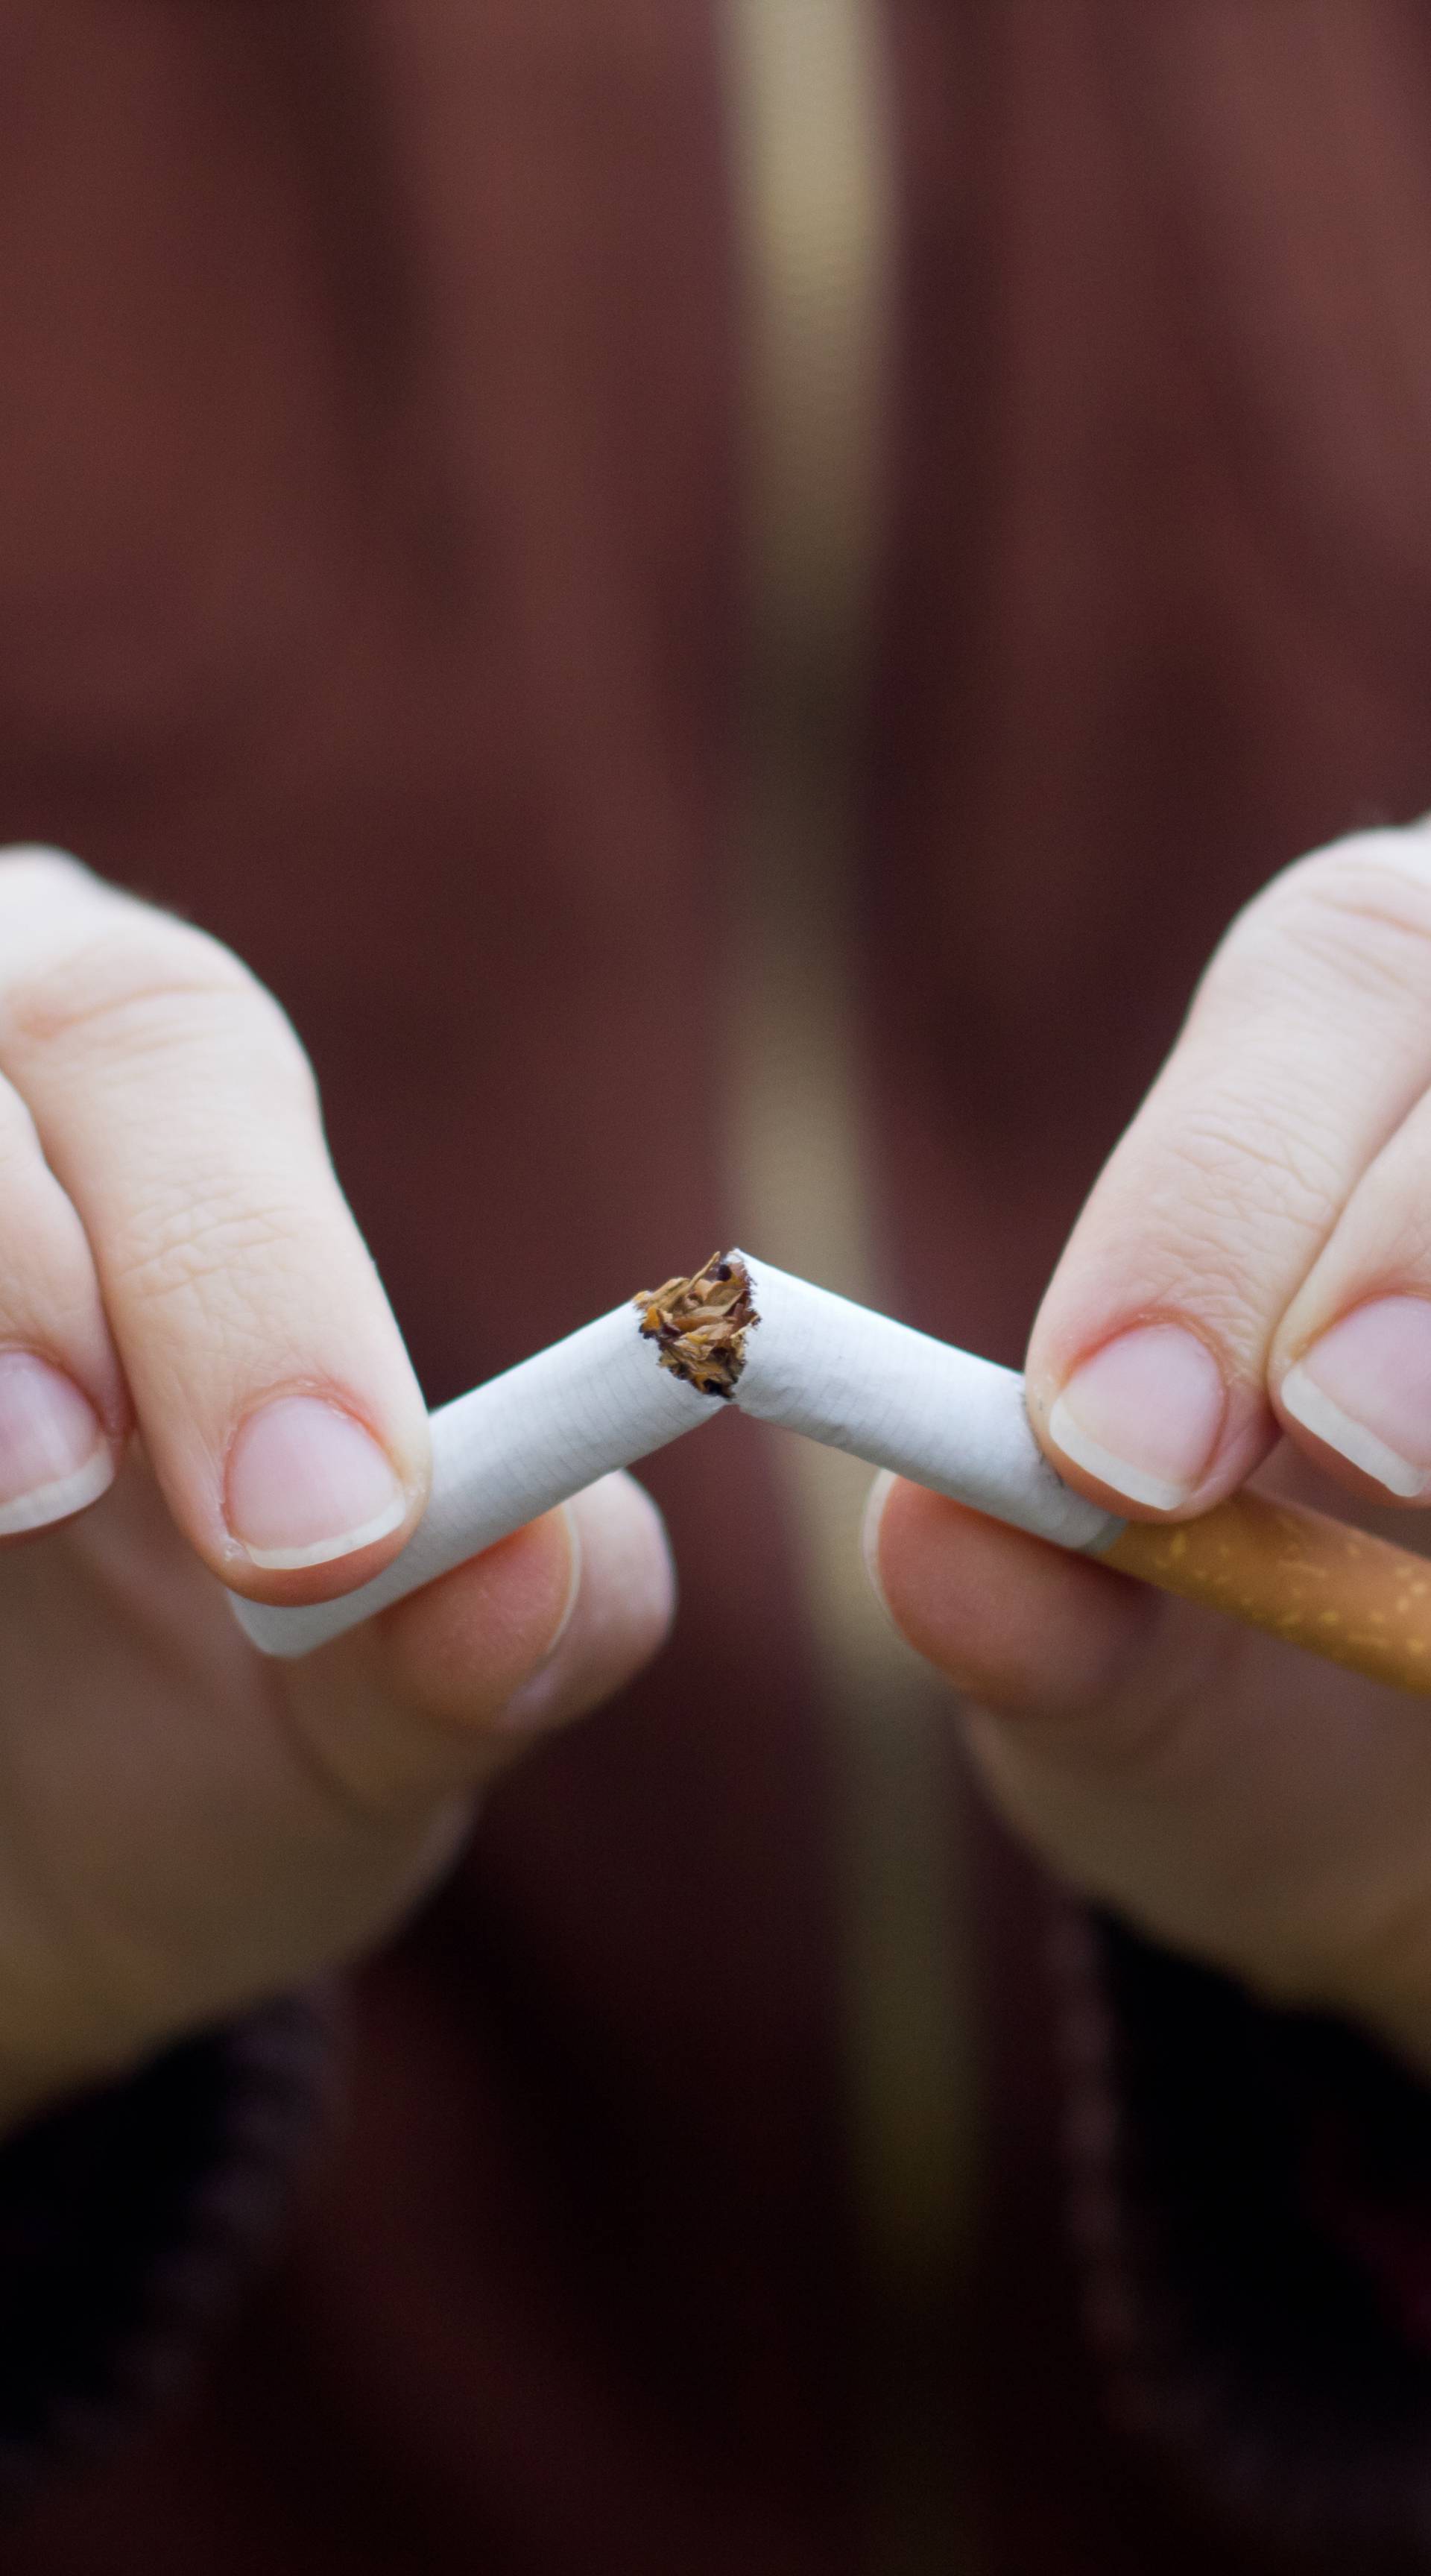 Prvi put se smanjuje potrošnja cigareta  među muškarcima